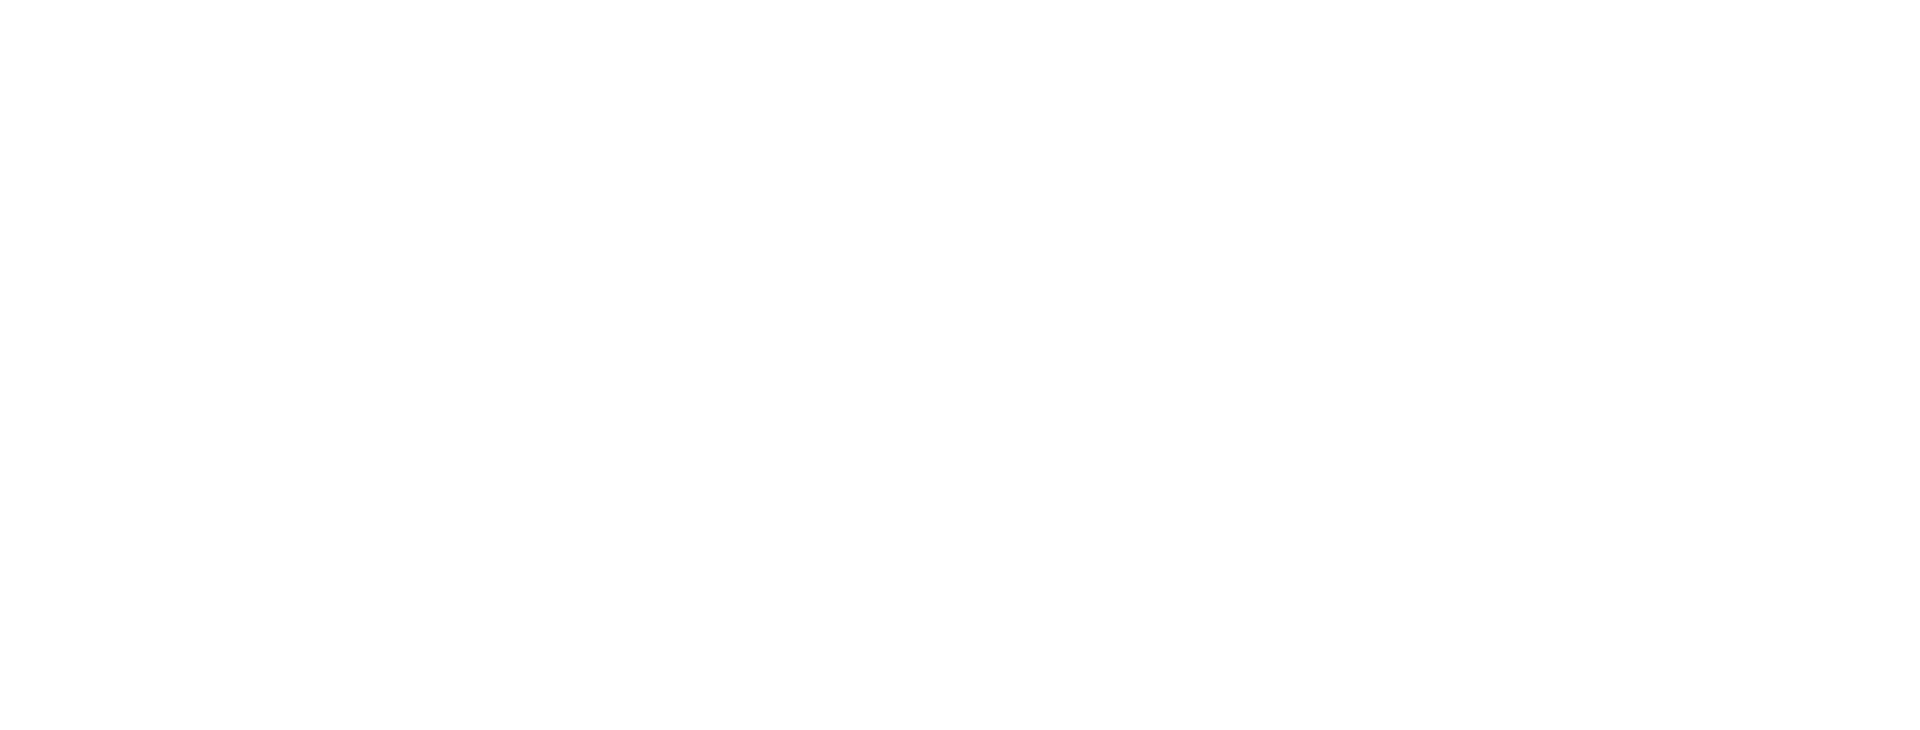 EW8 WALL